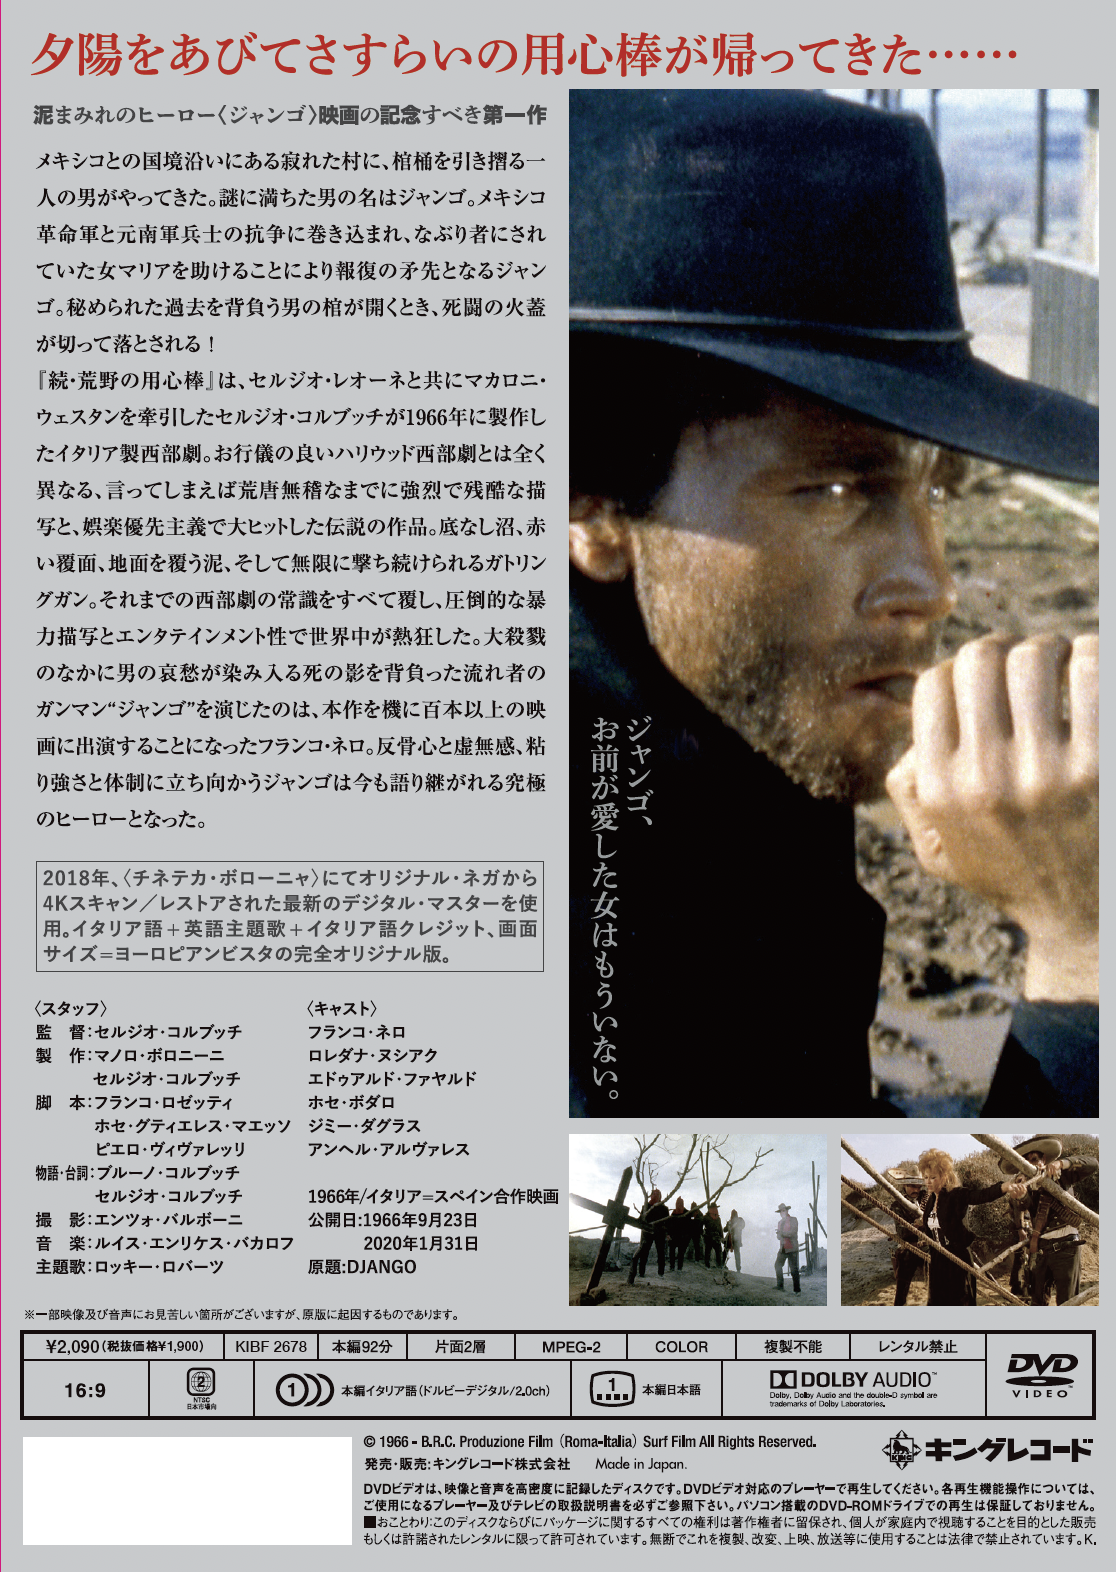 続 荒野の用心棒 HDニューマスター スペシャル・エディション Blu-ray i8my1cf